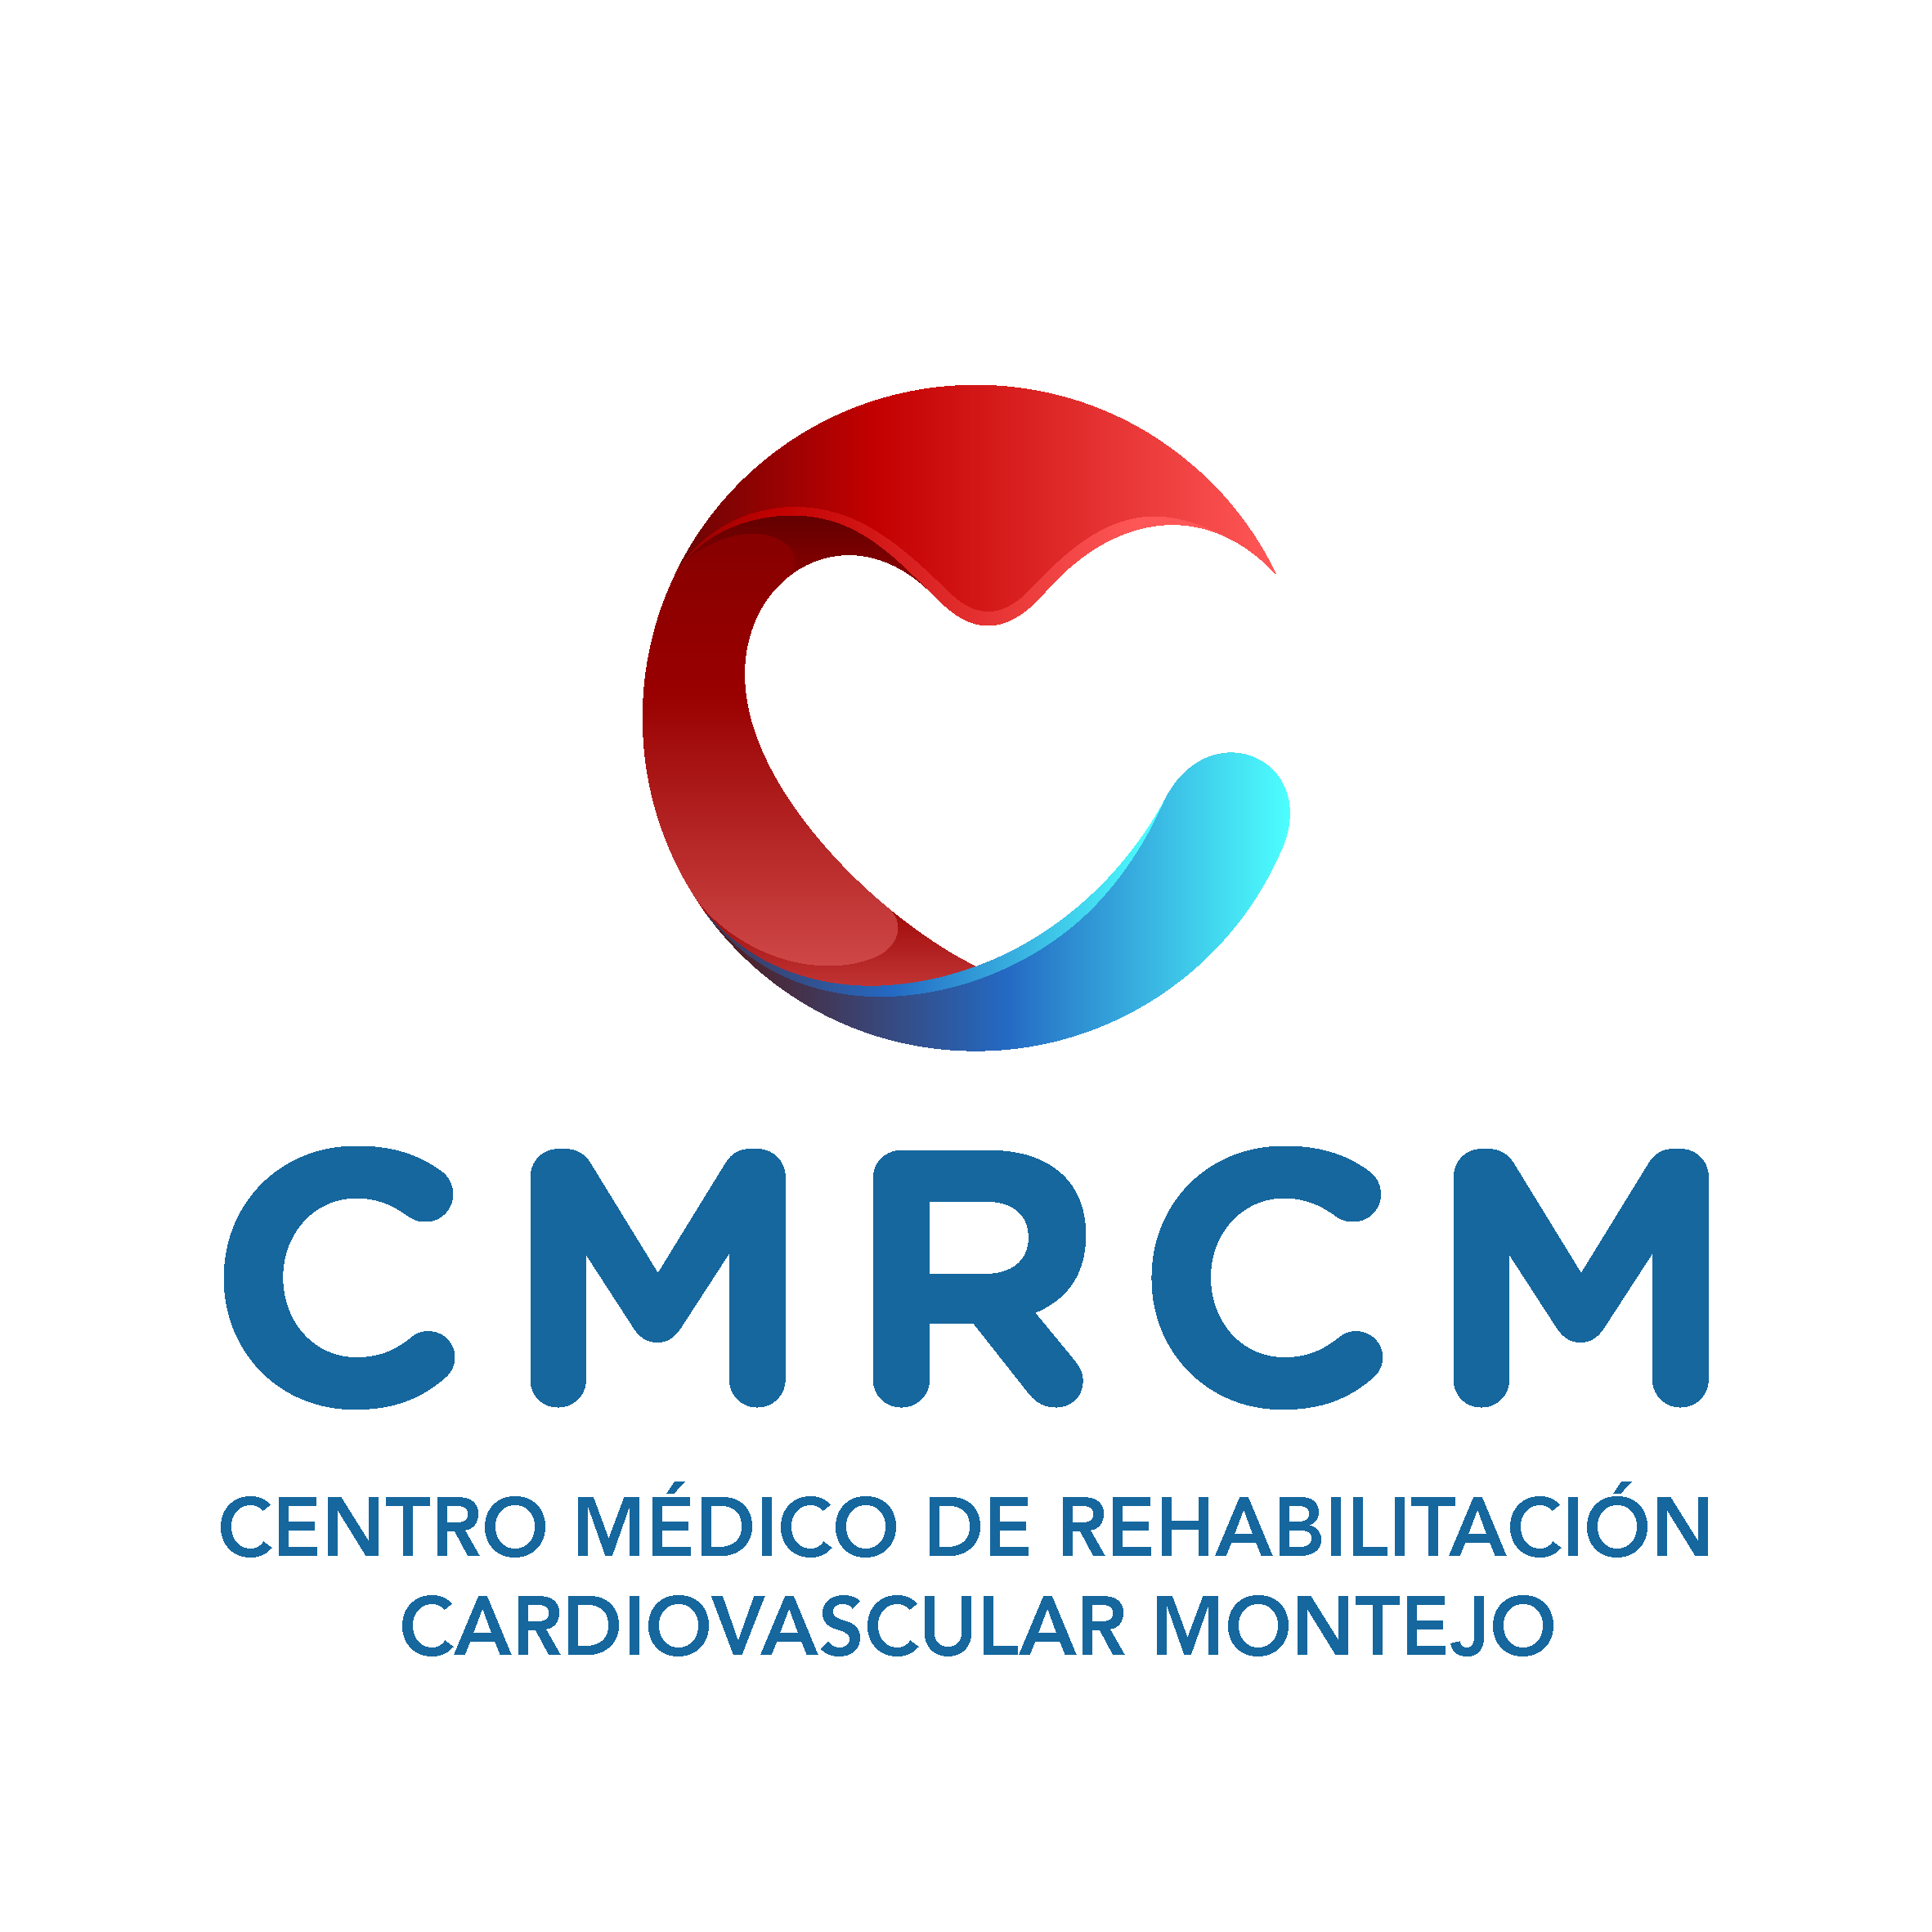 Centro Médico de Rehabilitación Cardiovascular Montejo